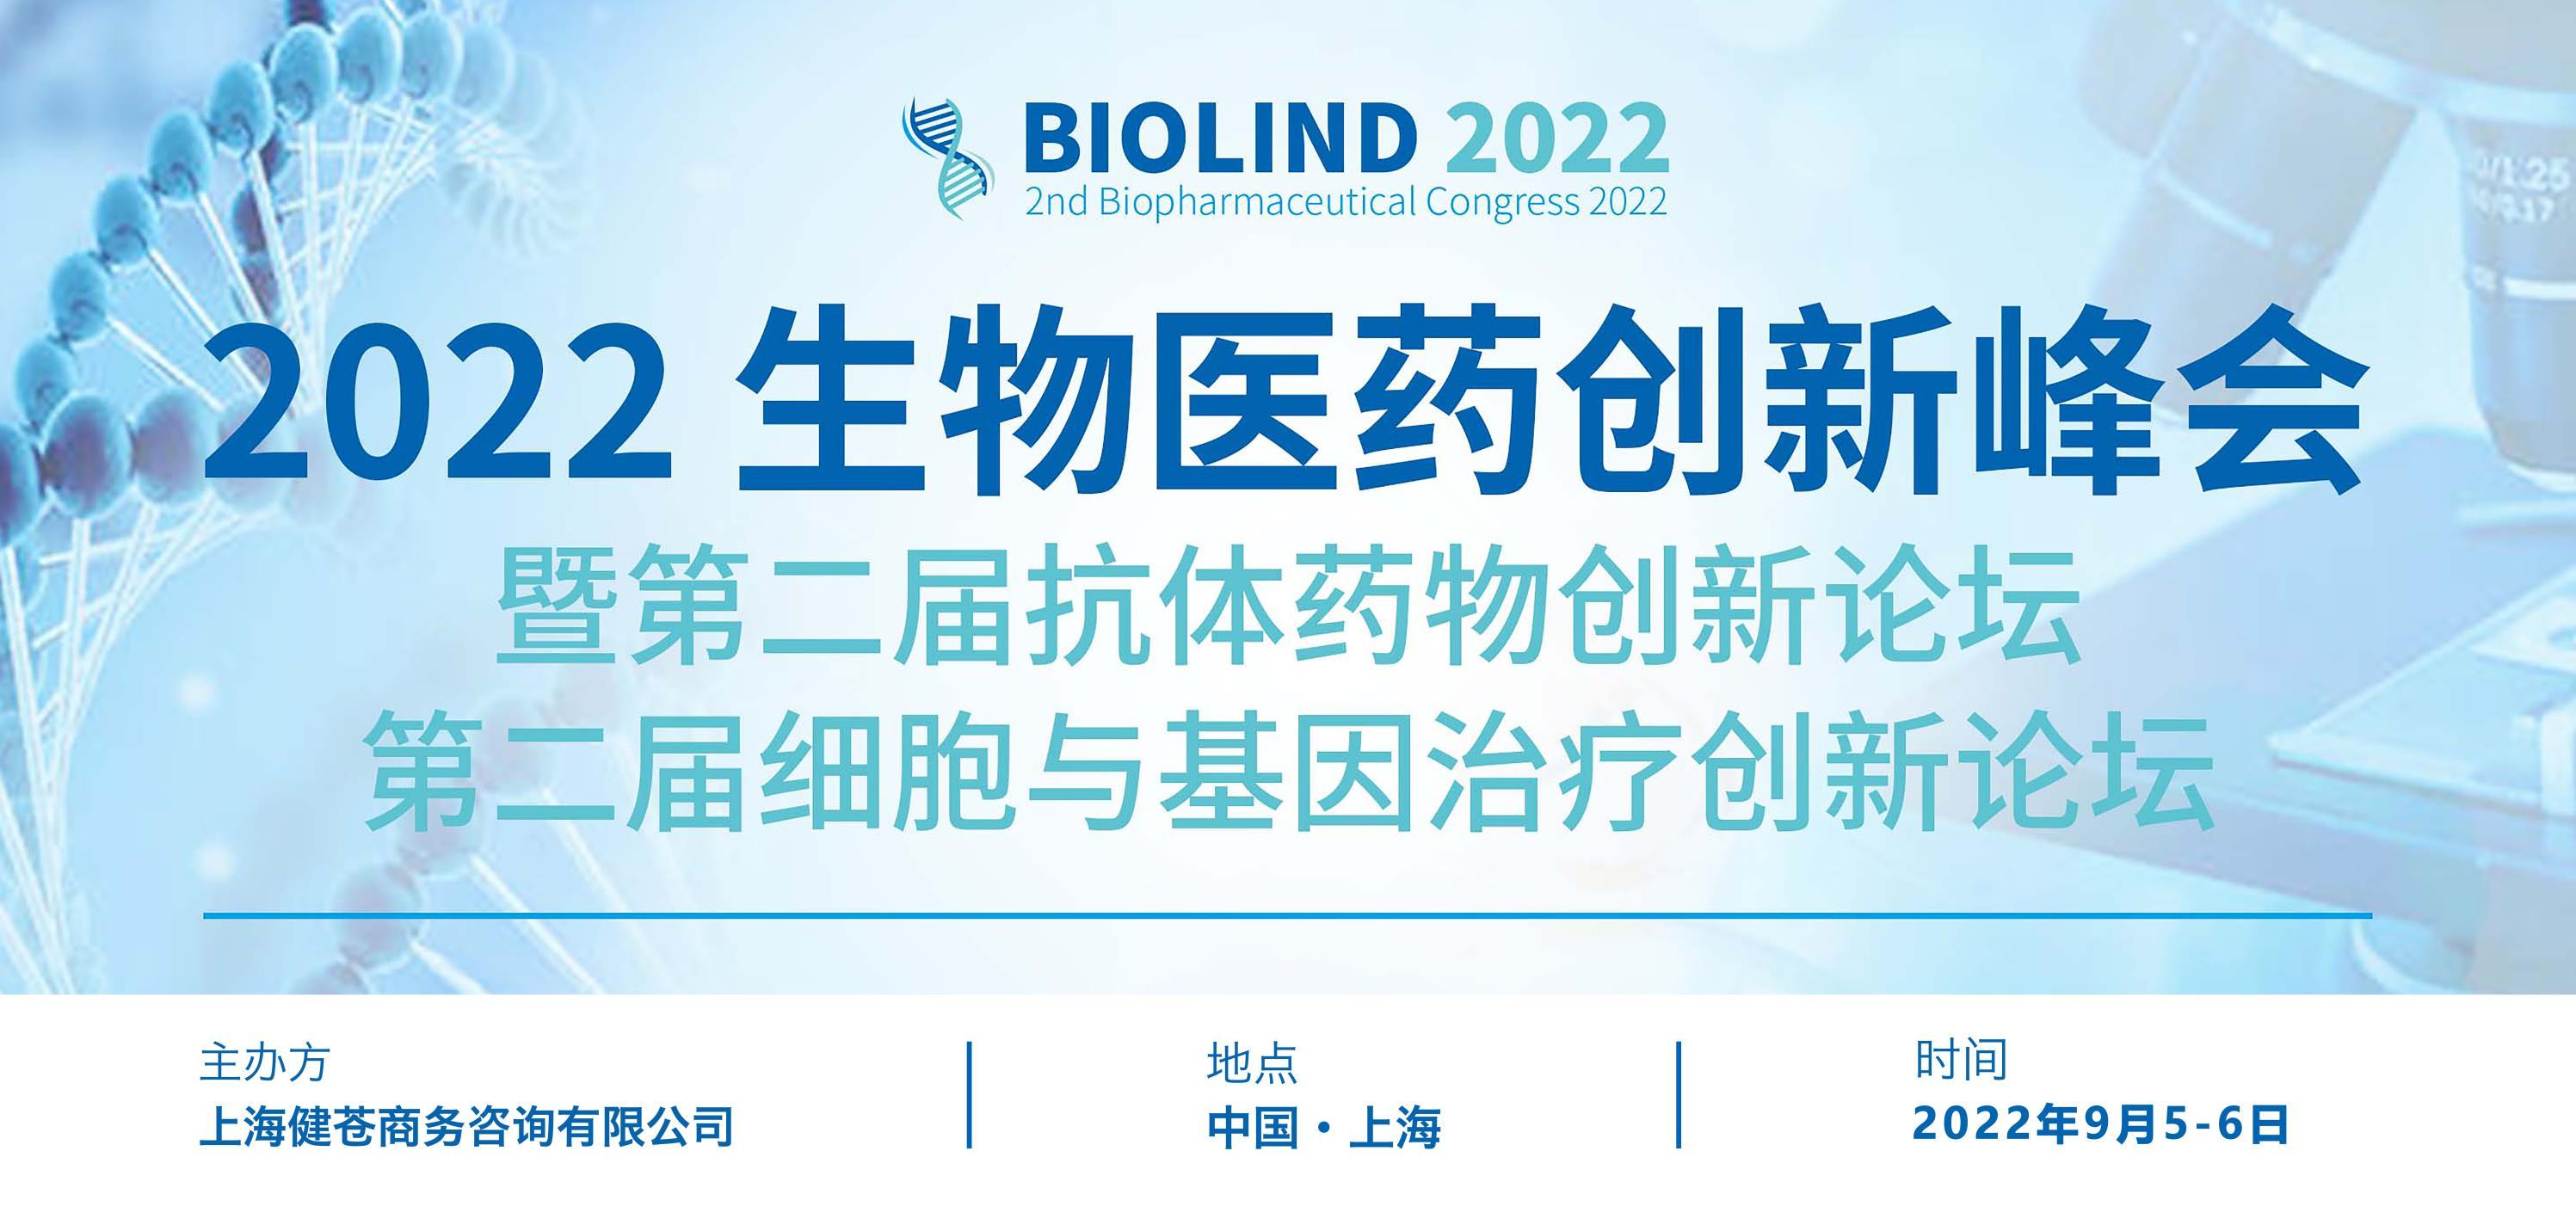 2022生物医药创新峰会